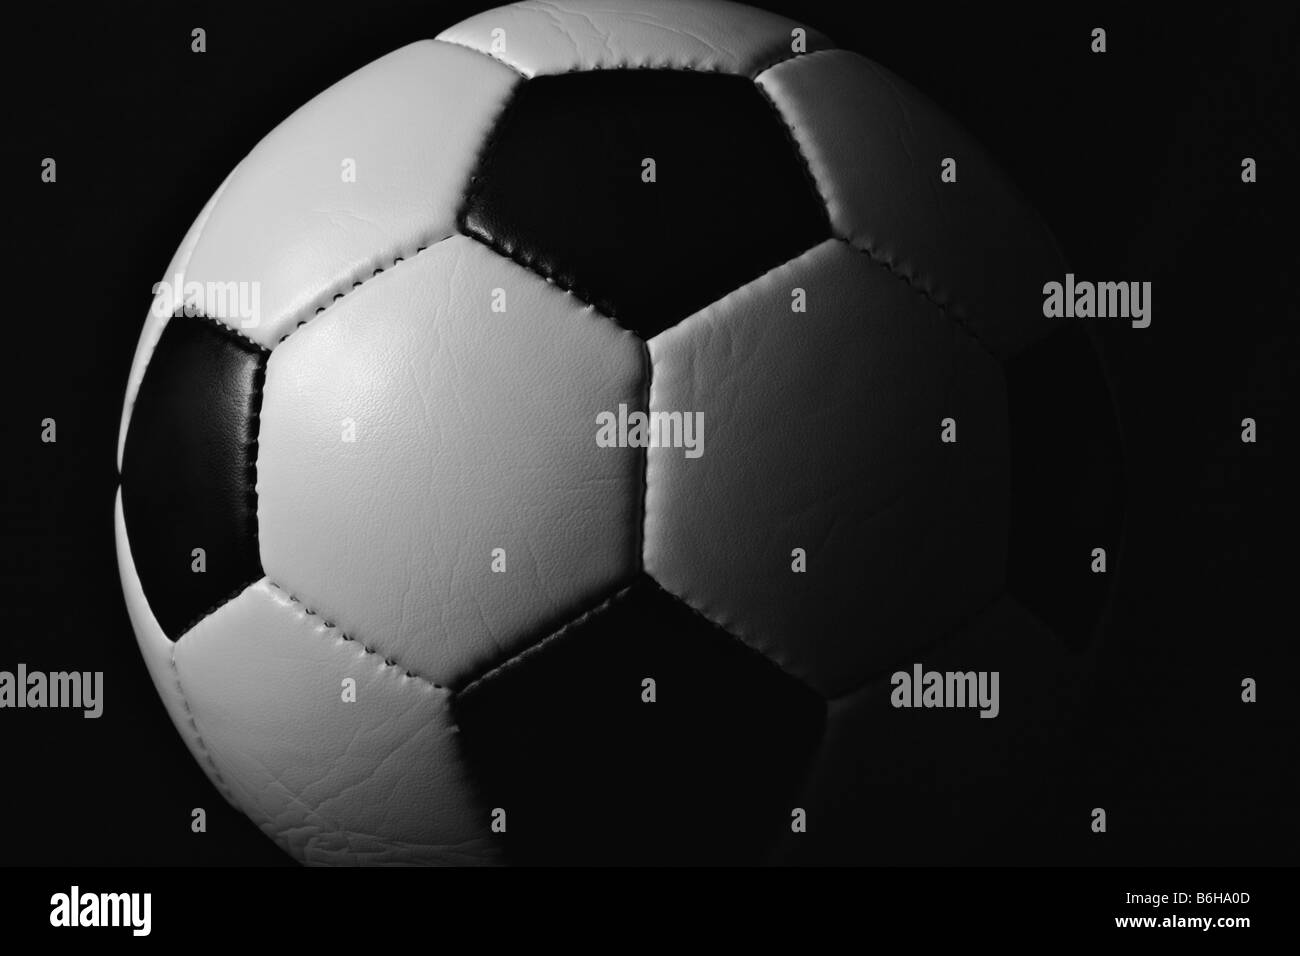 Schwarze und weiße Hälfte beleuchtet (beleuchteten) Fußball (Fußball) Ball close-up auf schwarzem Hintergrund. Stockfoto